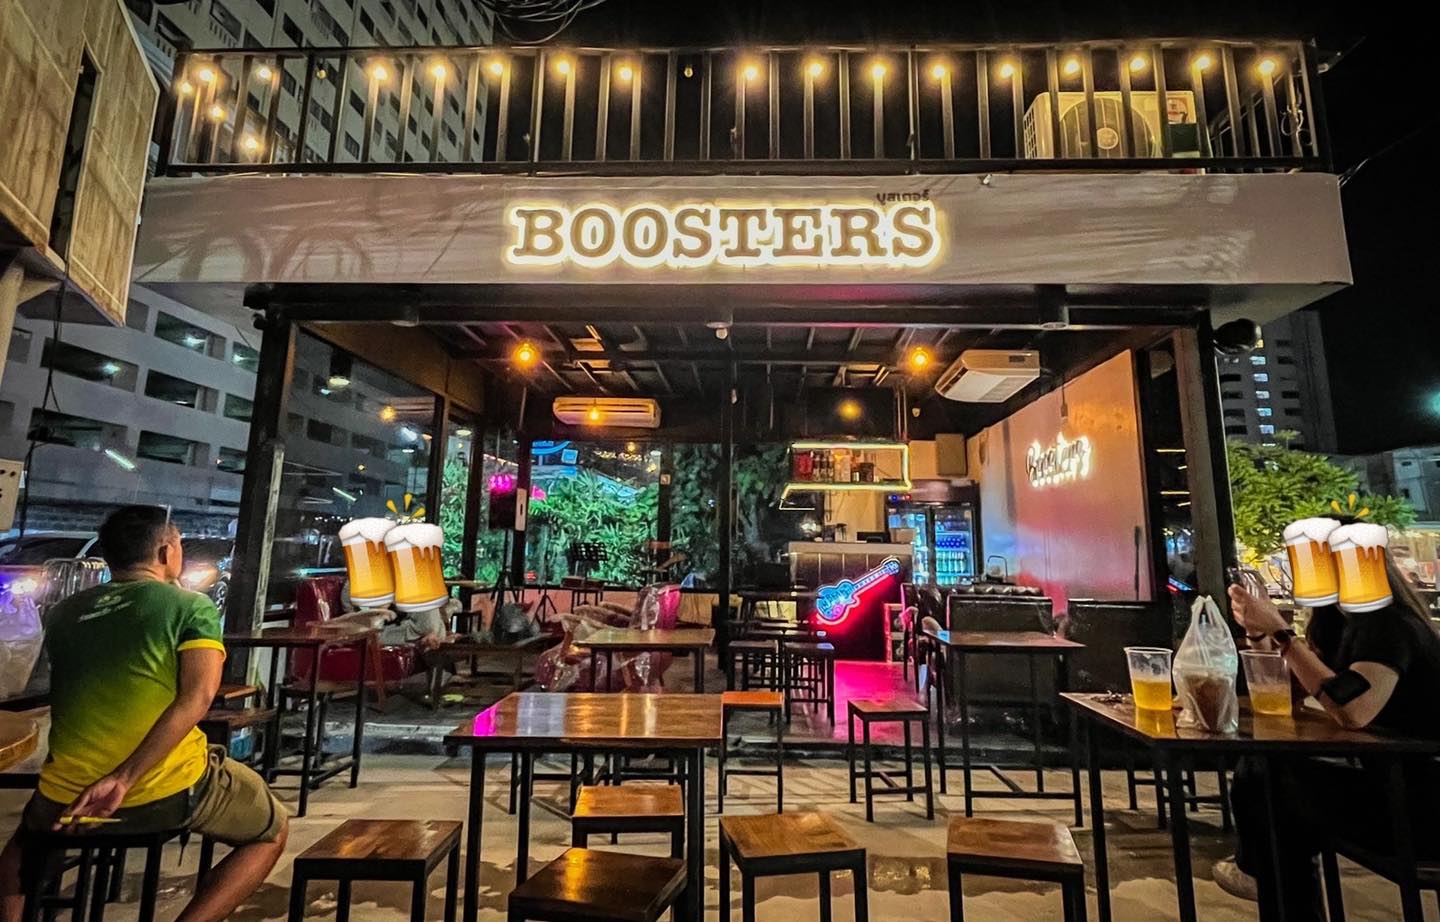 บูสเตอร์ - ตลาดอินดี้ ปิ่นเกล้า (Boosters) : กรุงเทพมหานคร (Bangkok)